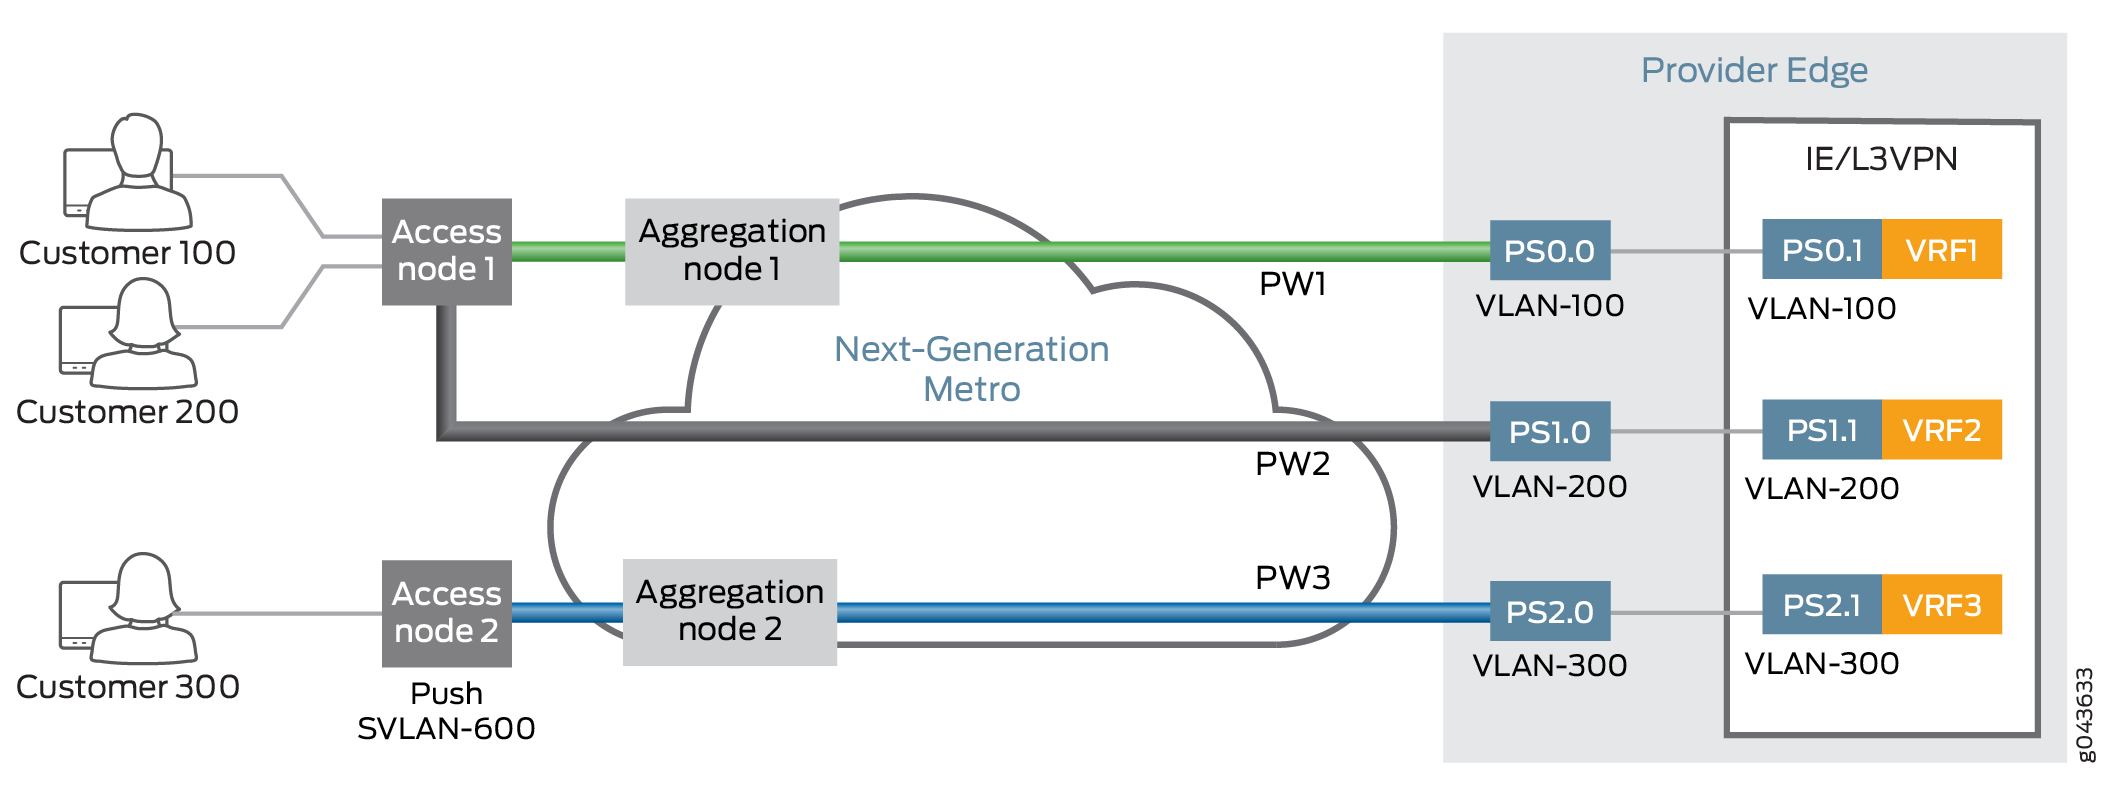 Interface logique de transport client pseudowire à partir d’un nœud d’accès